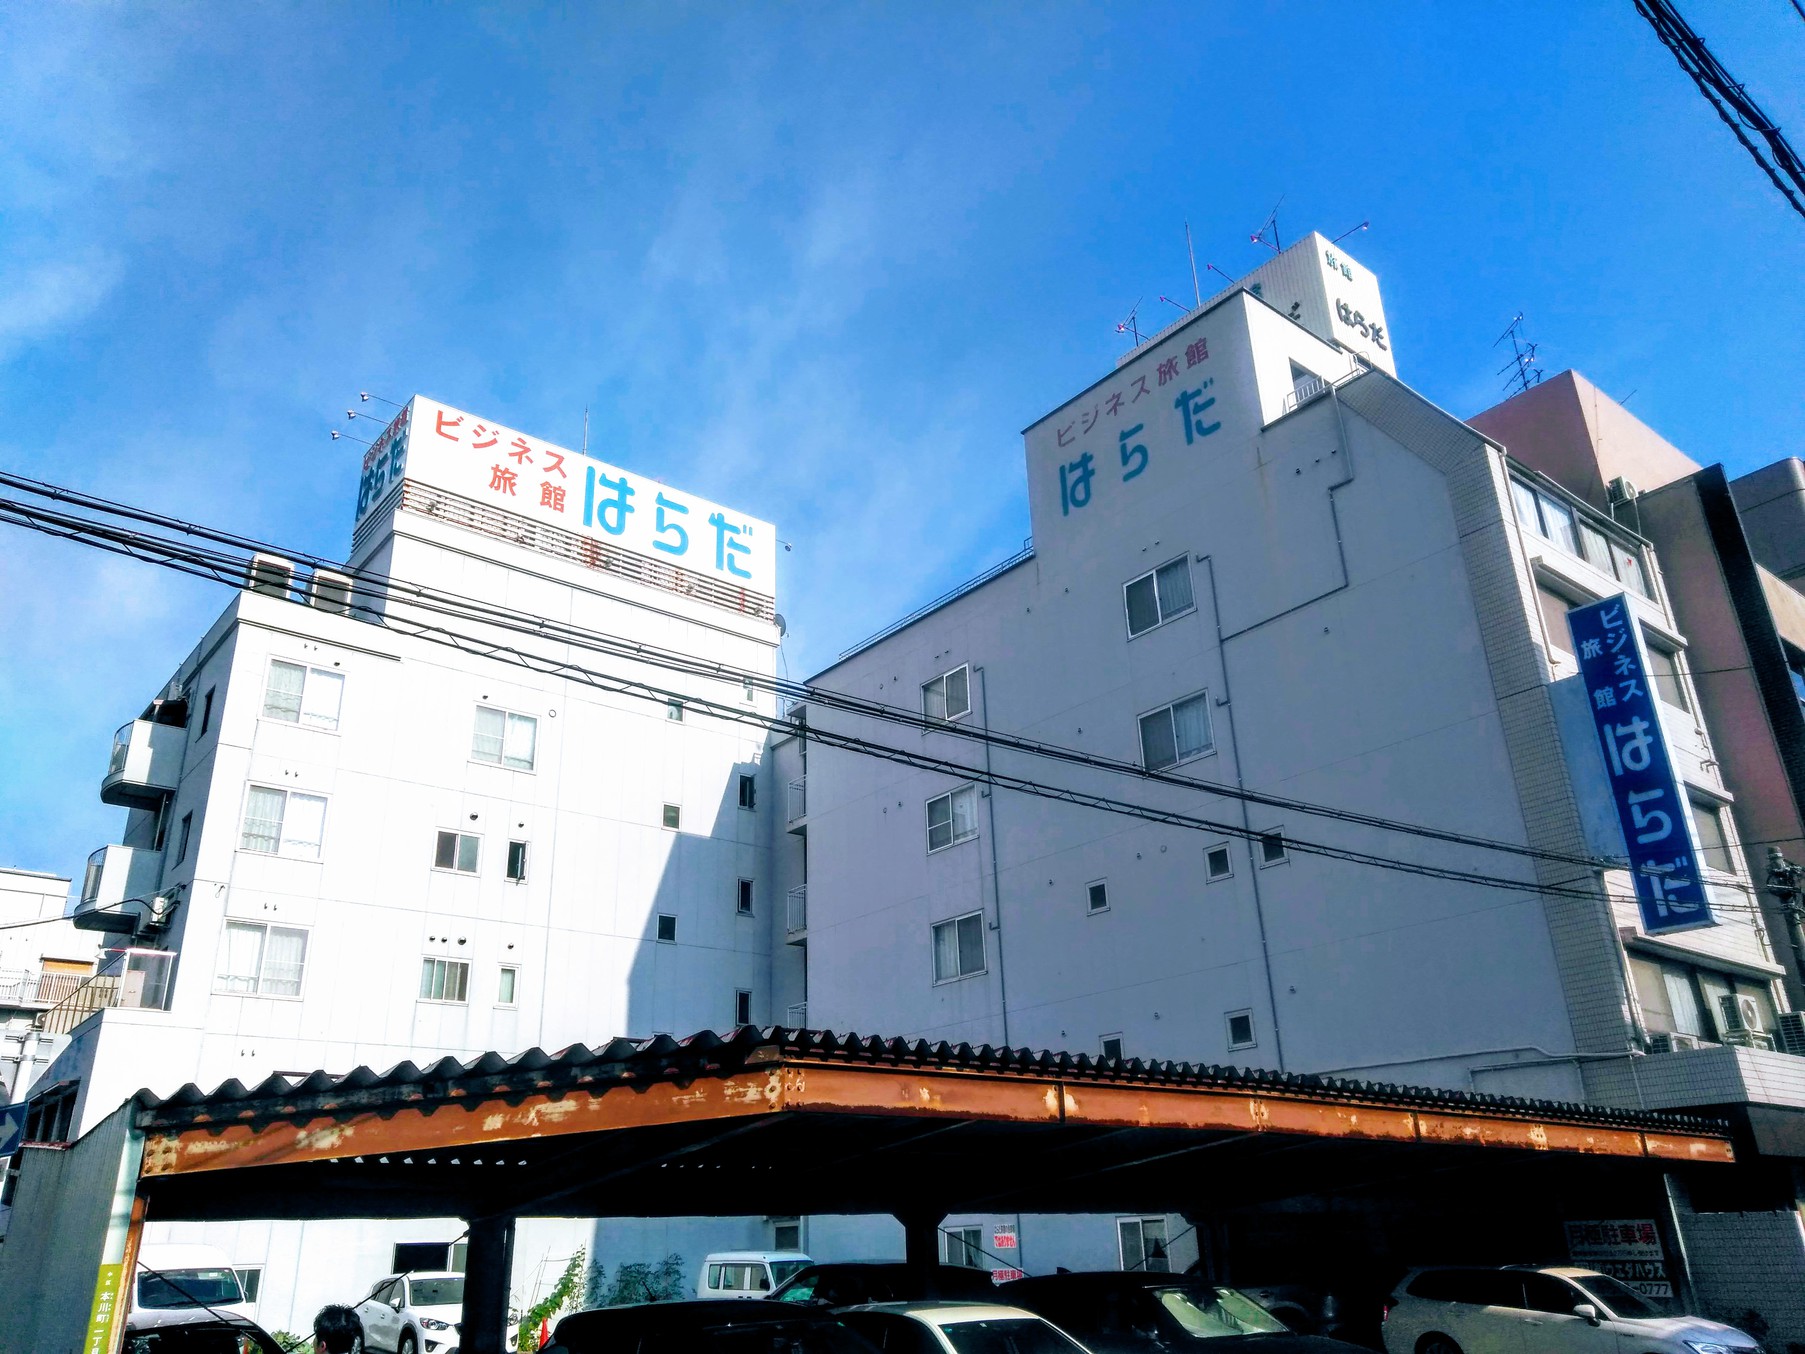 原田商務旅館